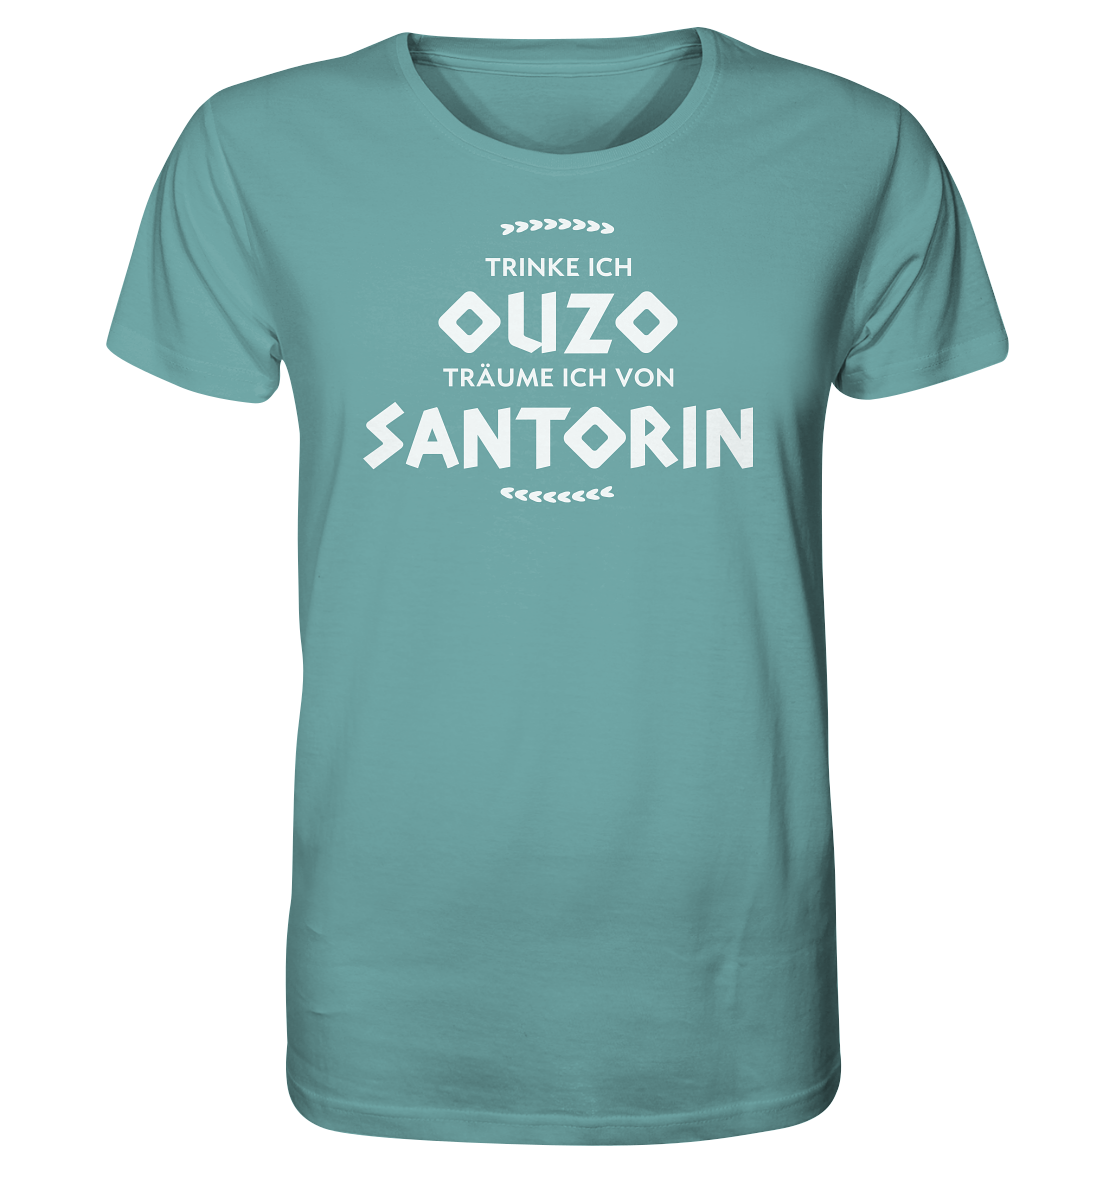 Trinke ich Ouzo träume ich von Santorin - Organic Shirt